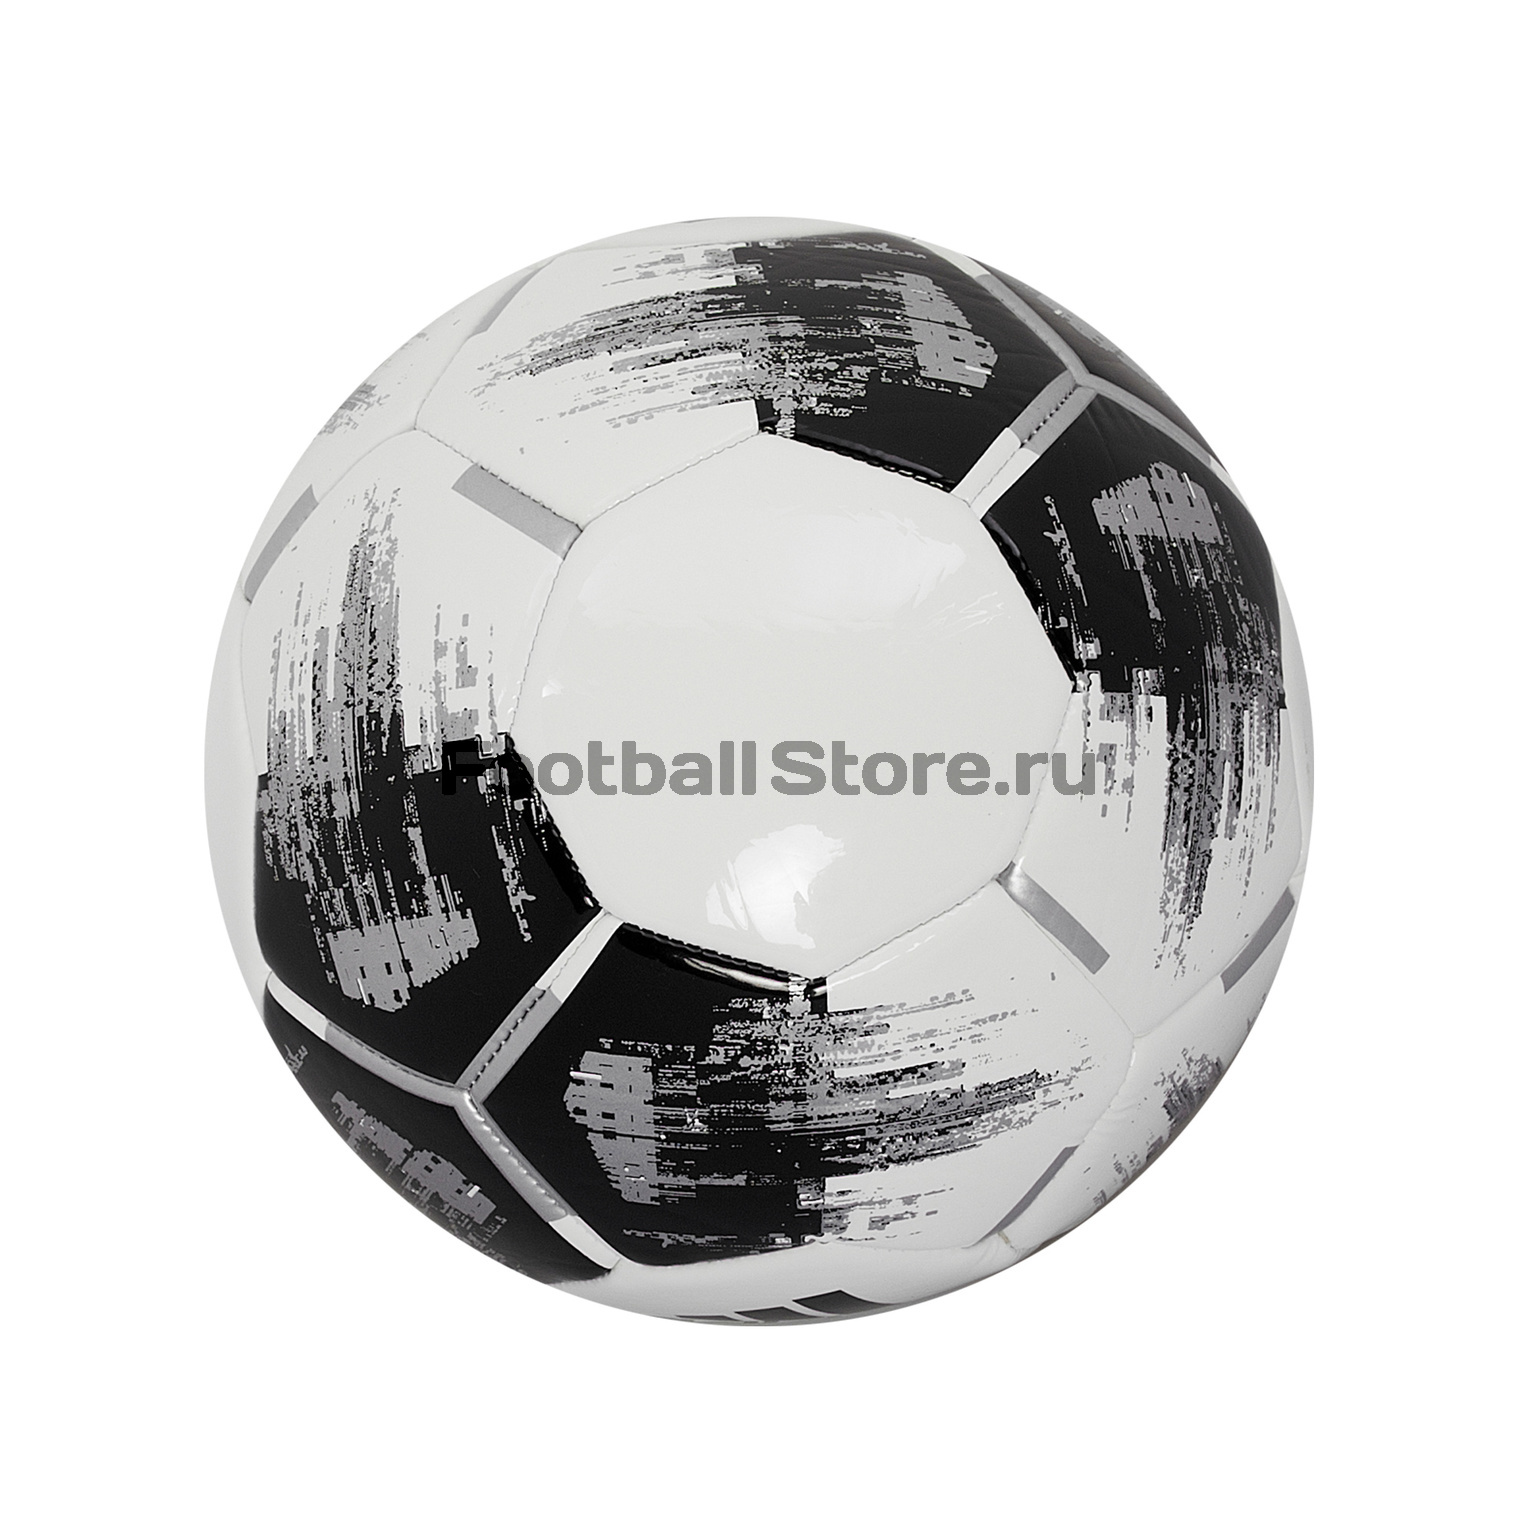 Футбольный мяч Adidas Team Glider CZ2230